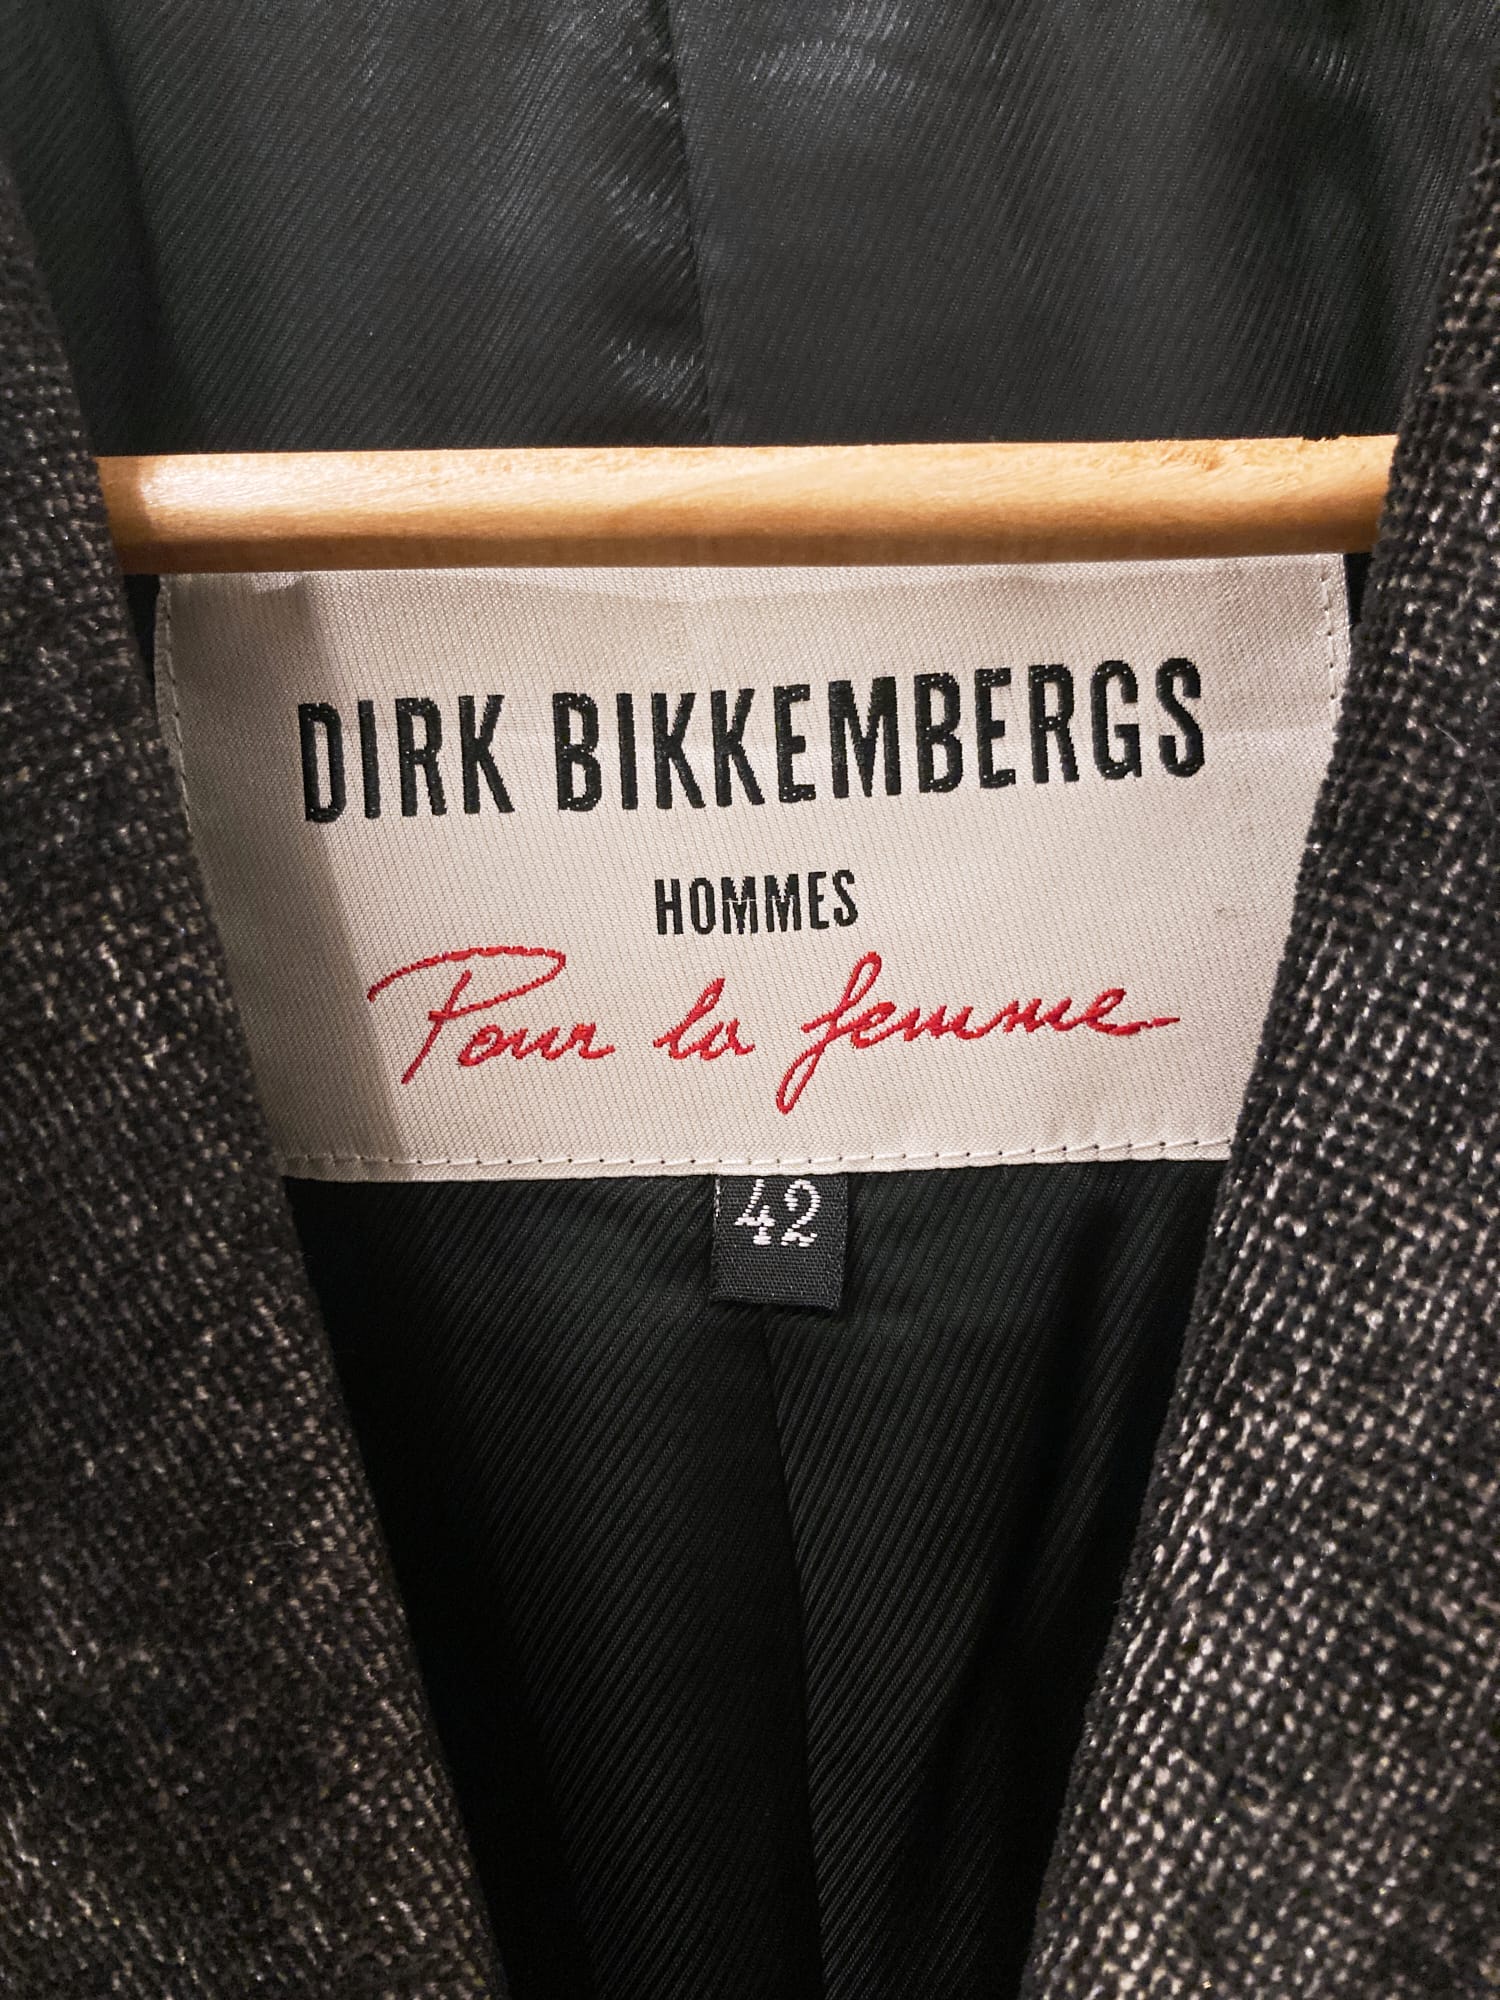 Dirk Bikkembergs Hommes Pour La Femme 1990s dark grey velvet peak lapel blazer